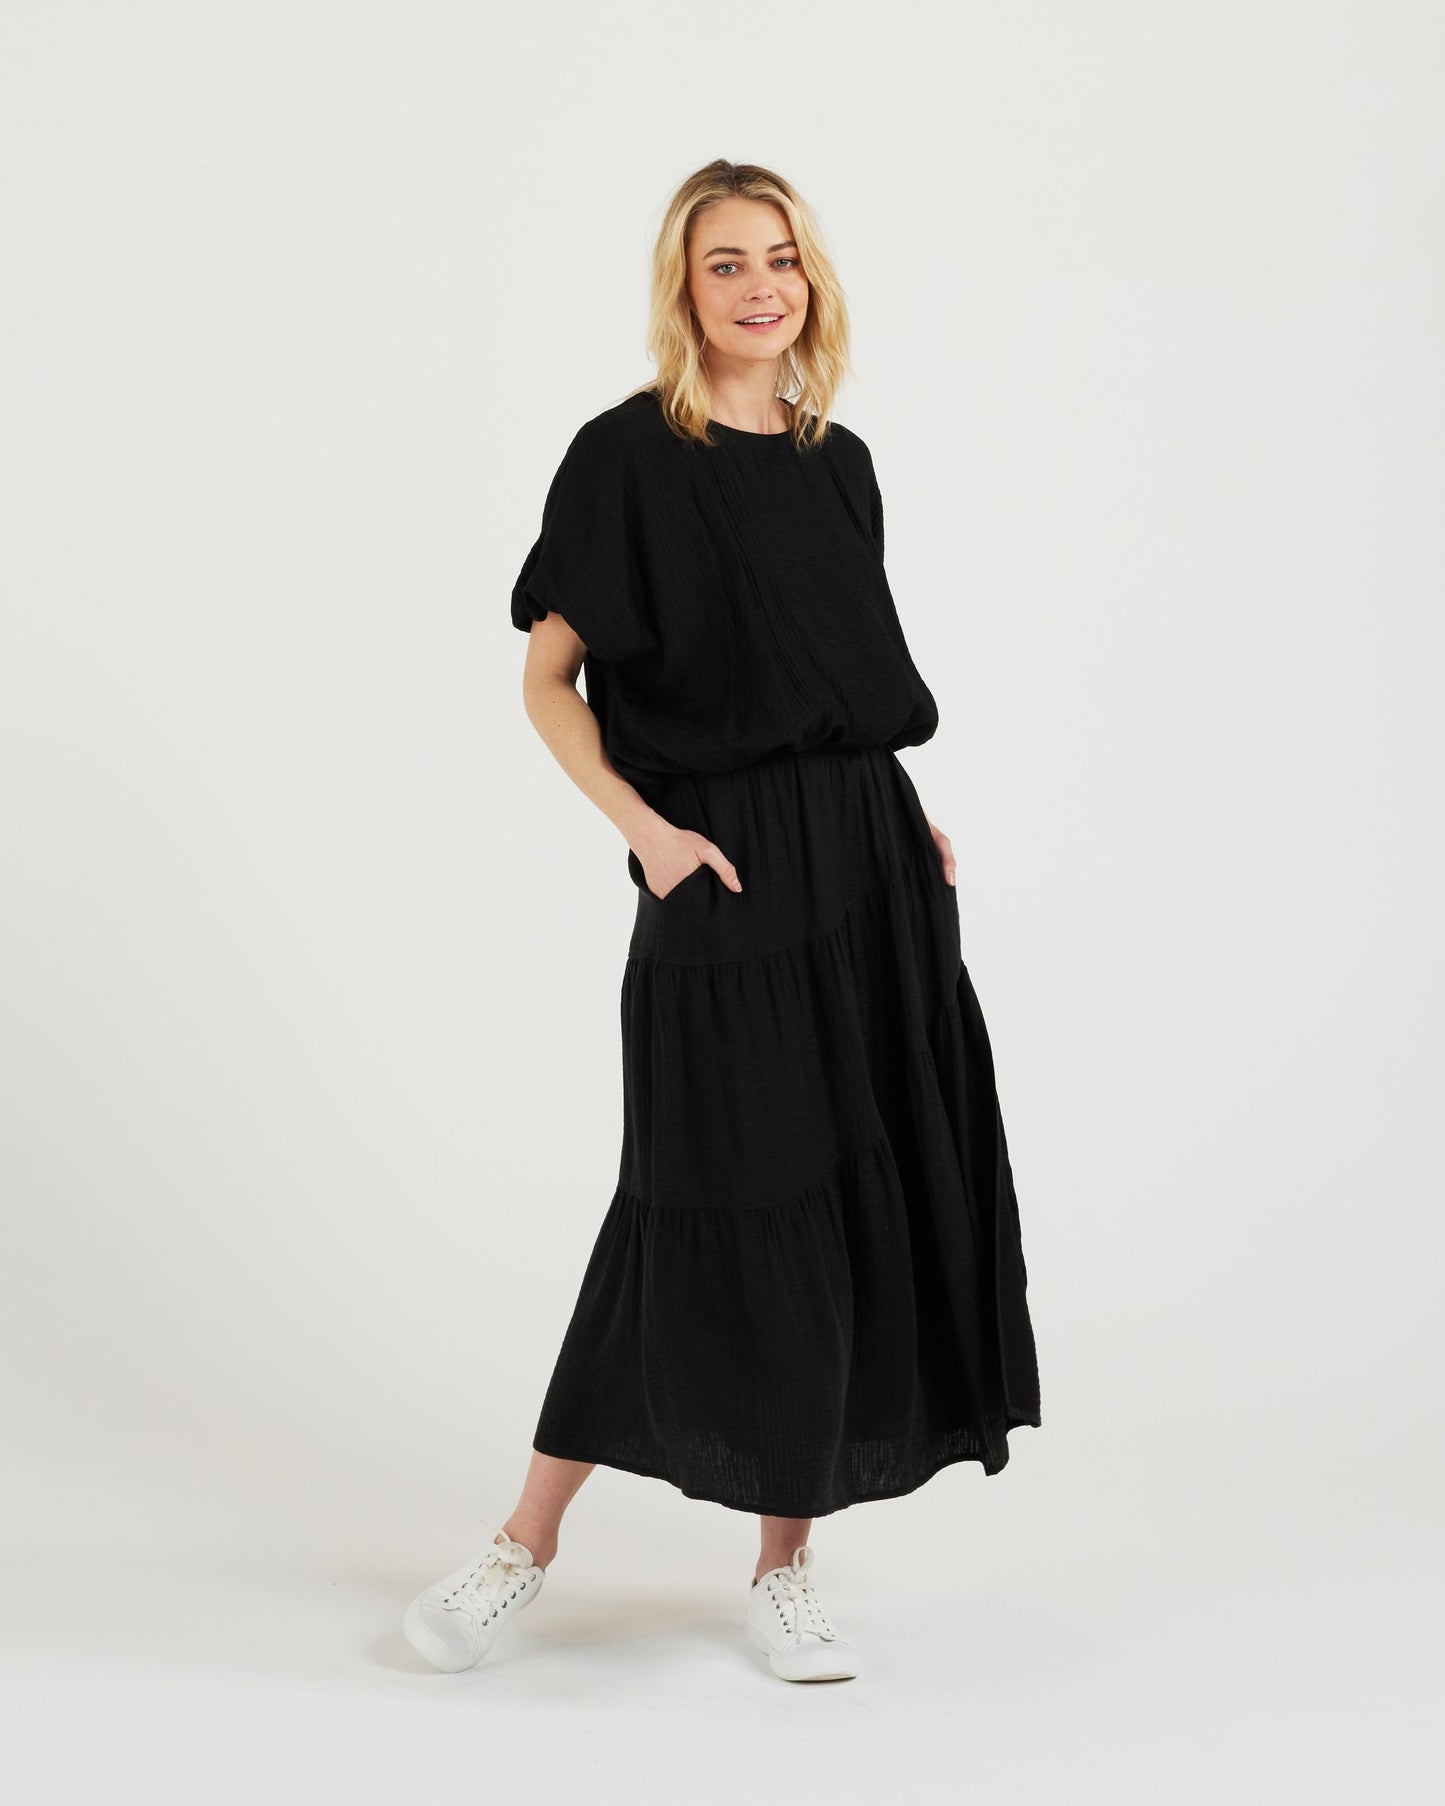 Imogen Skirt (black)